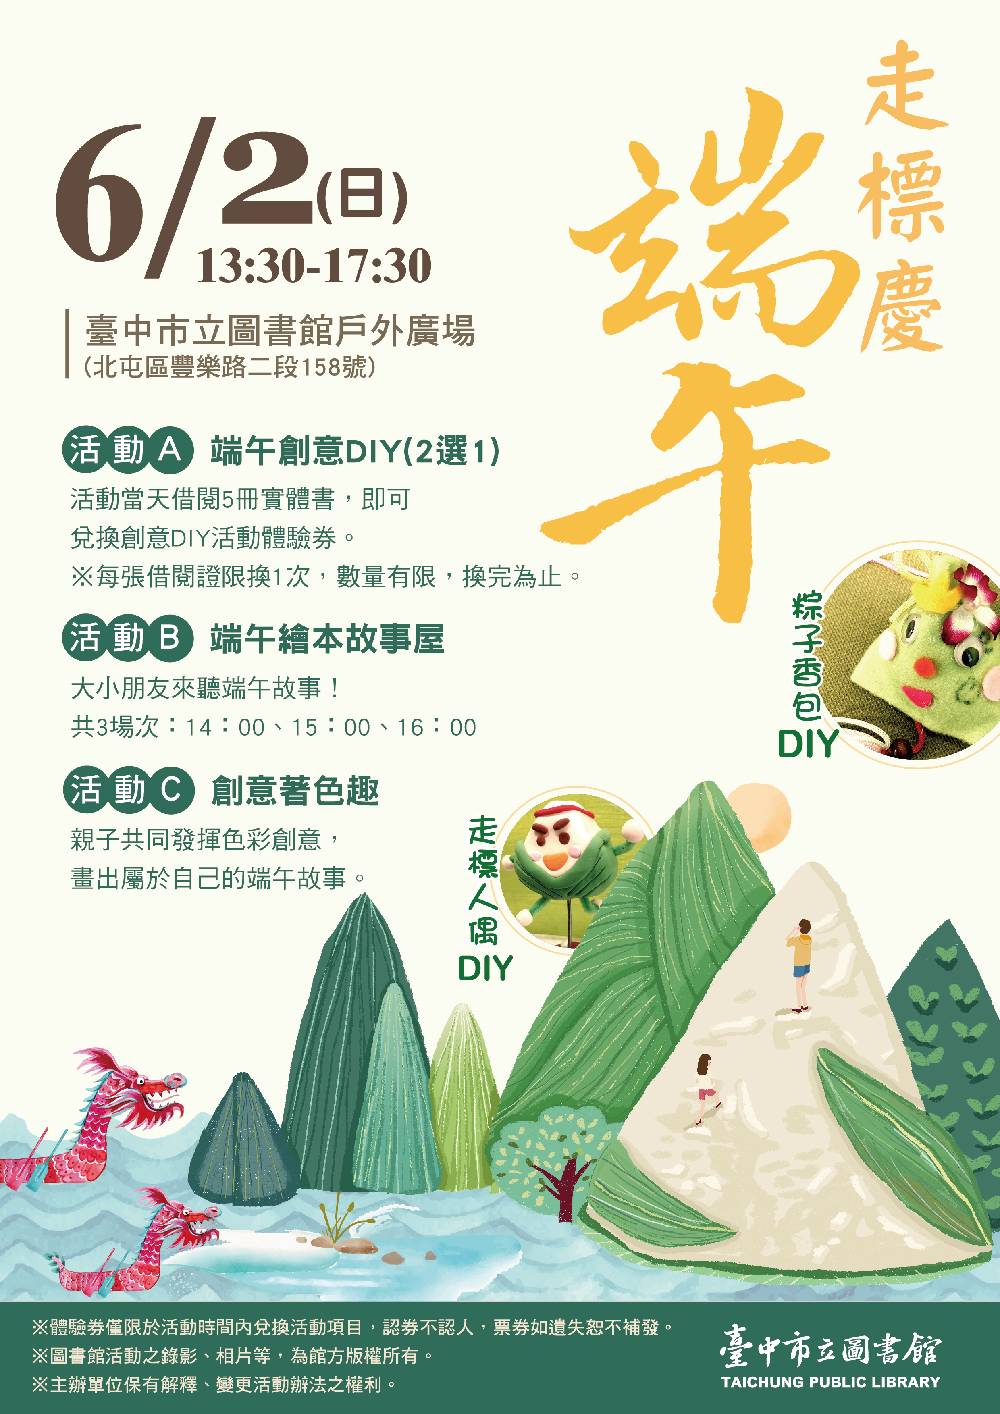 臺中市立圖書館今年特別配合在地社區走標比賽，於6月2日下午舉辦「走標慶端午」創意活動